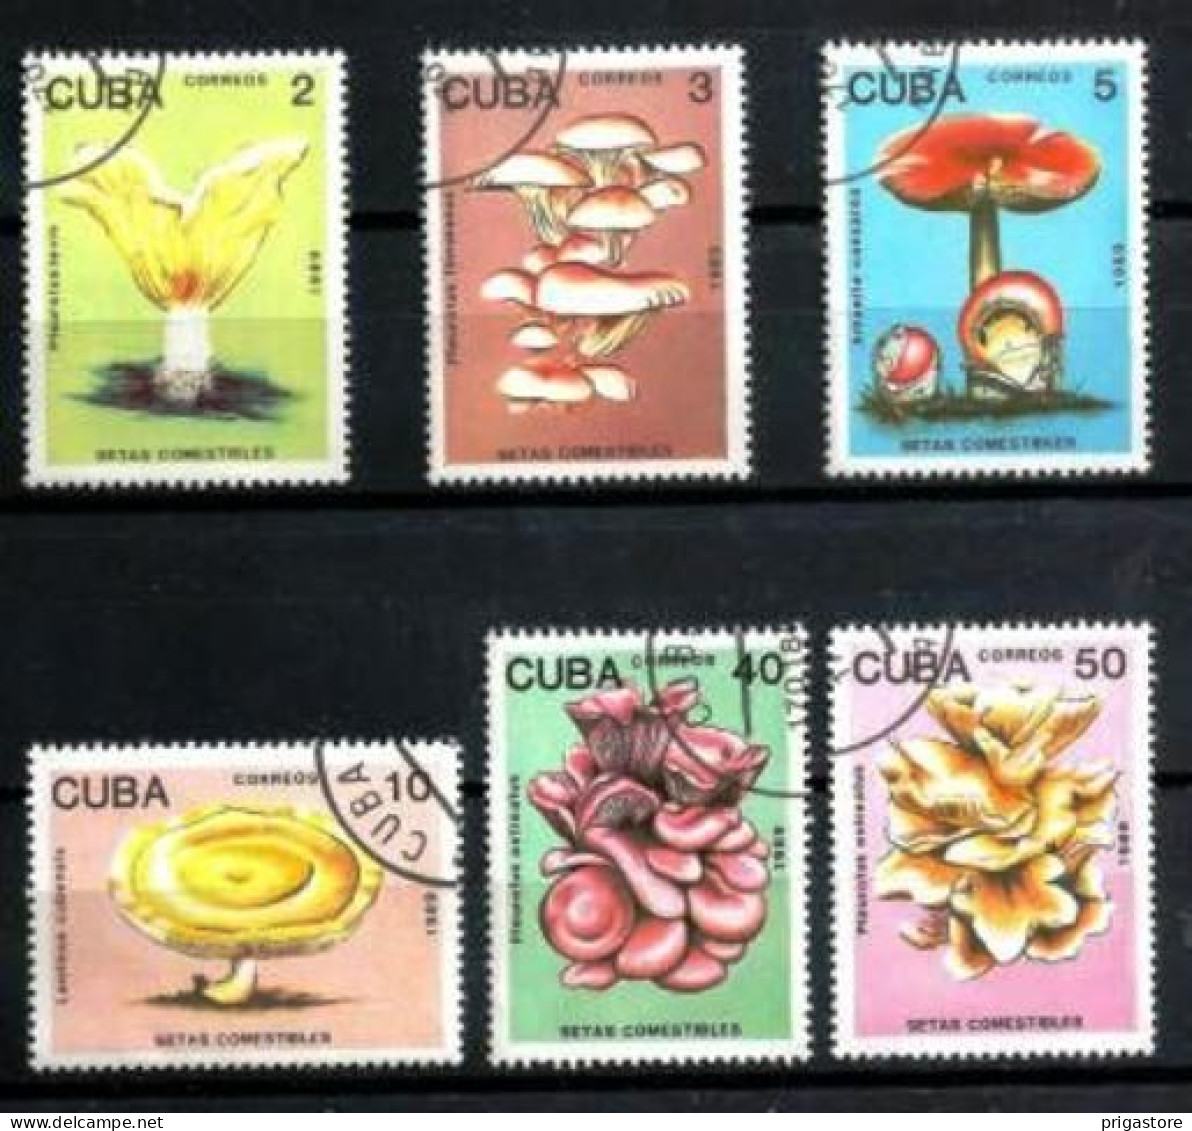 Champignons Cuba 1983 (12) Yvert N° 2907 à 2912 Oblitérés Used - Champignons